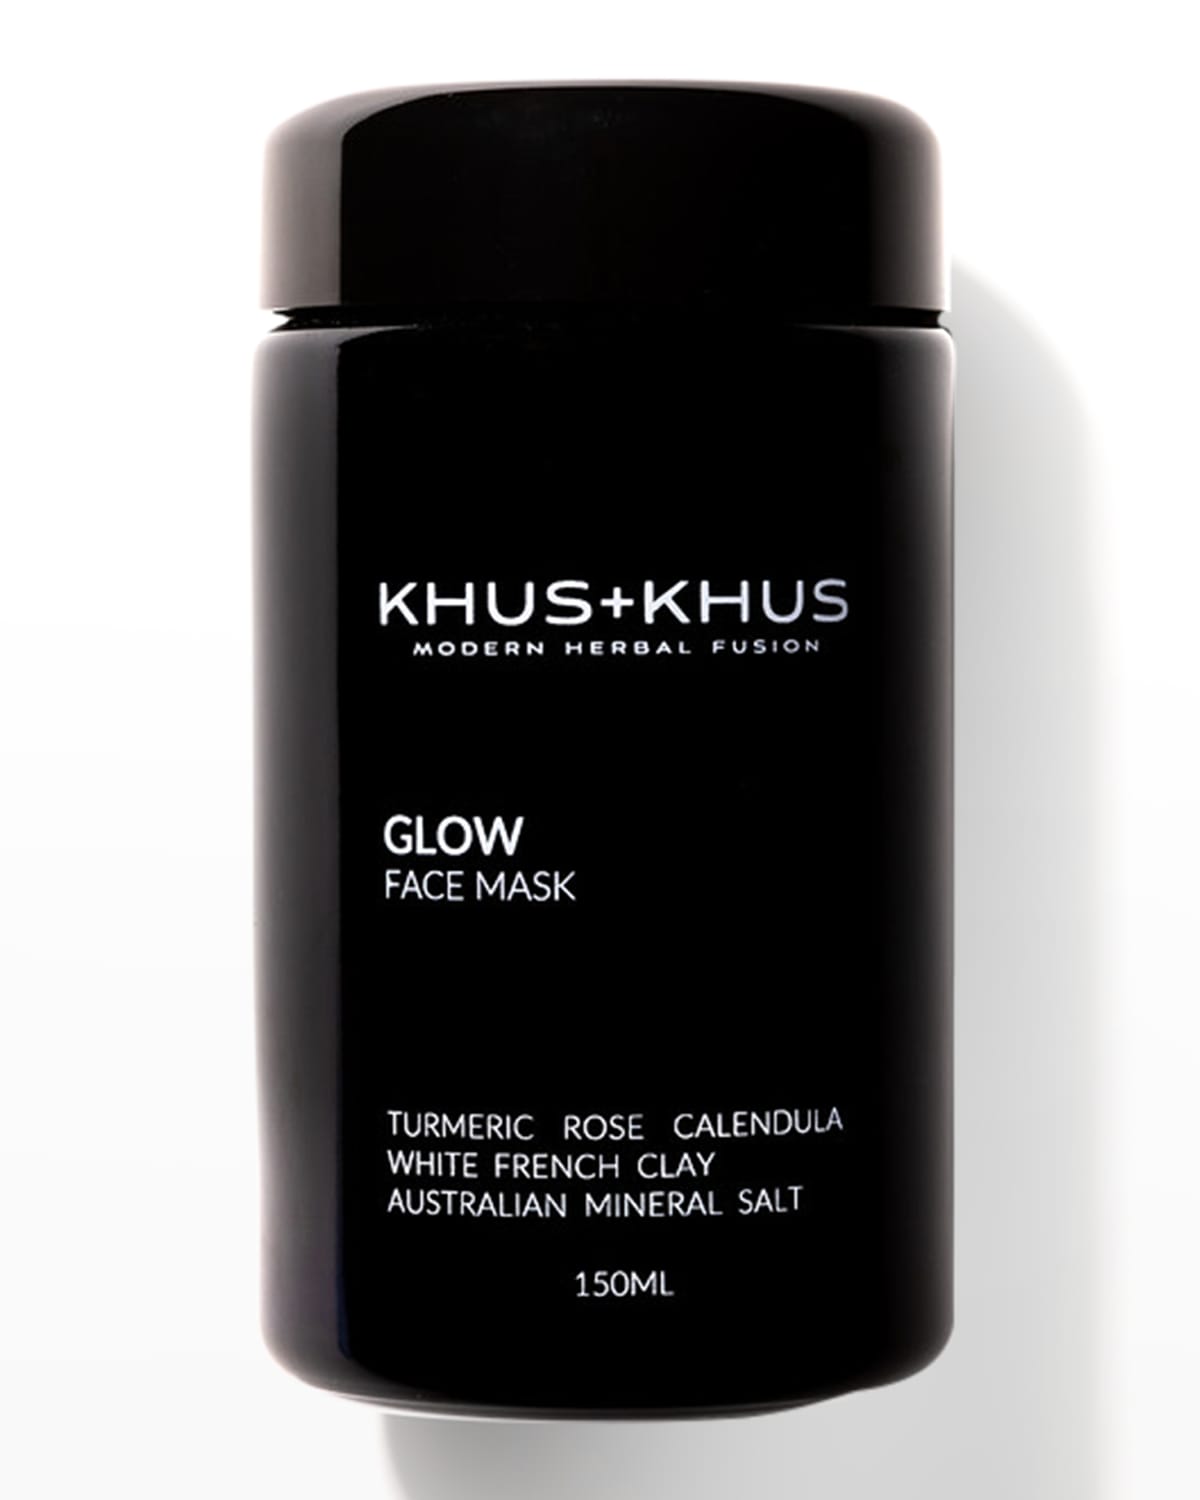 KHUS + KHUS Glow Face Mask, 5 oz.